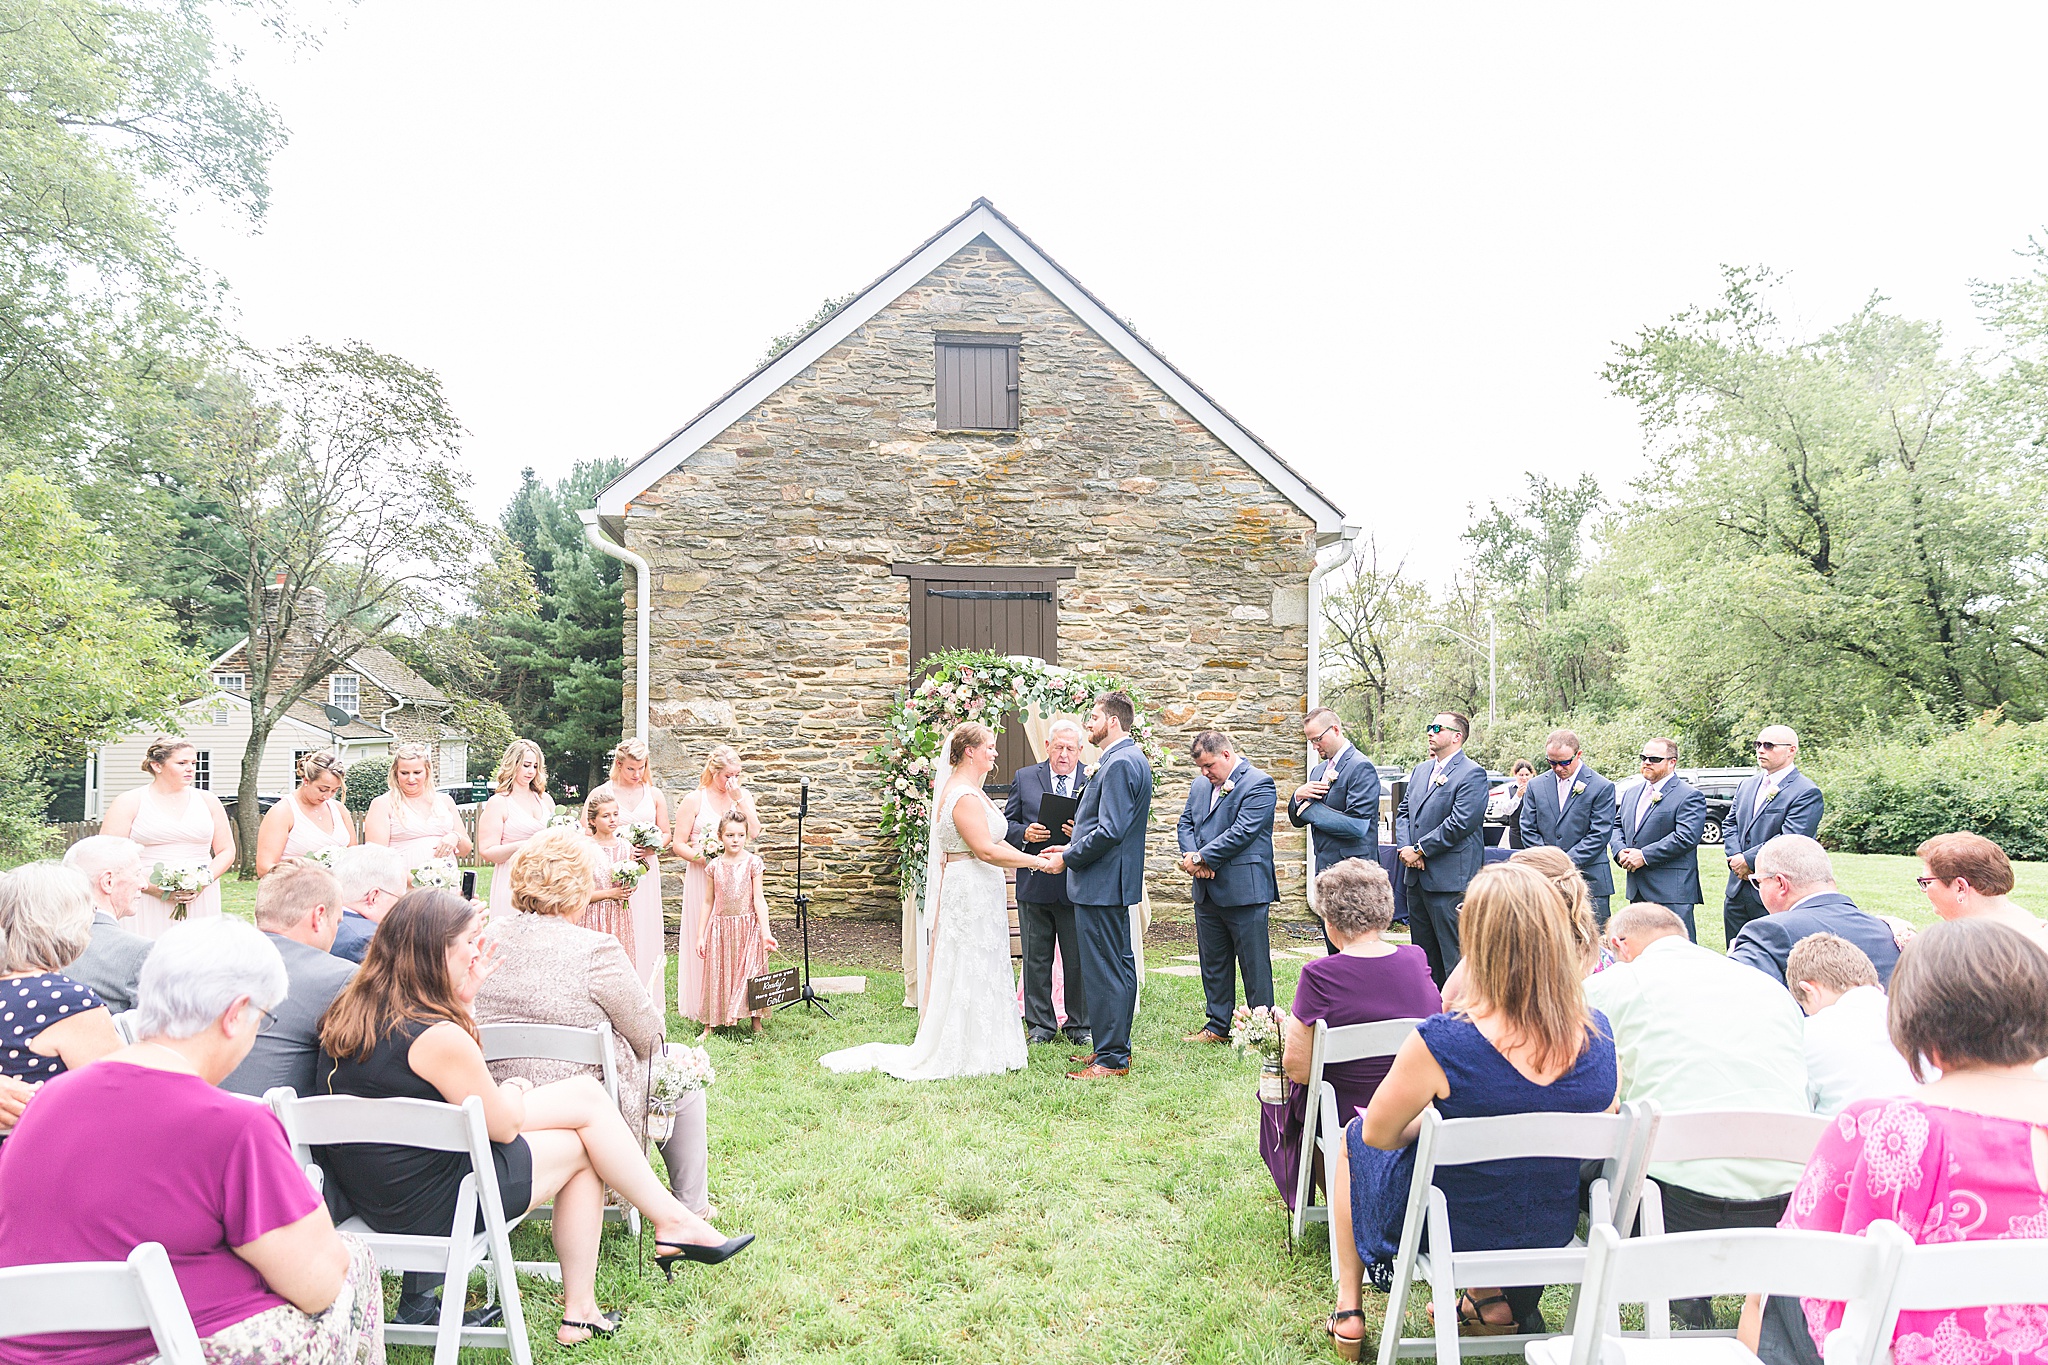 Waverly Mansion wedding ceremony photographed by Maryland wedding photographer Alexandra Mandato Photography